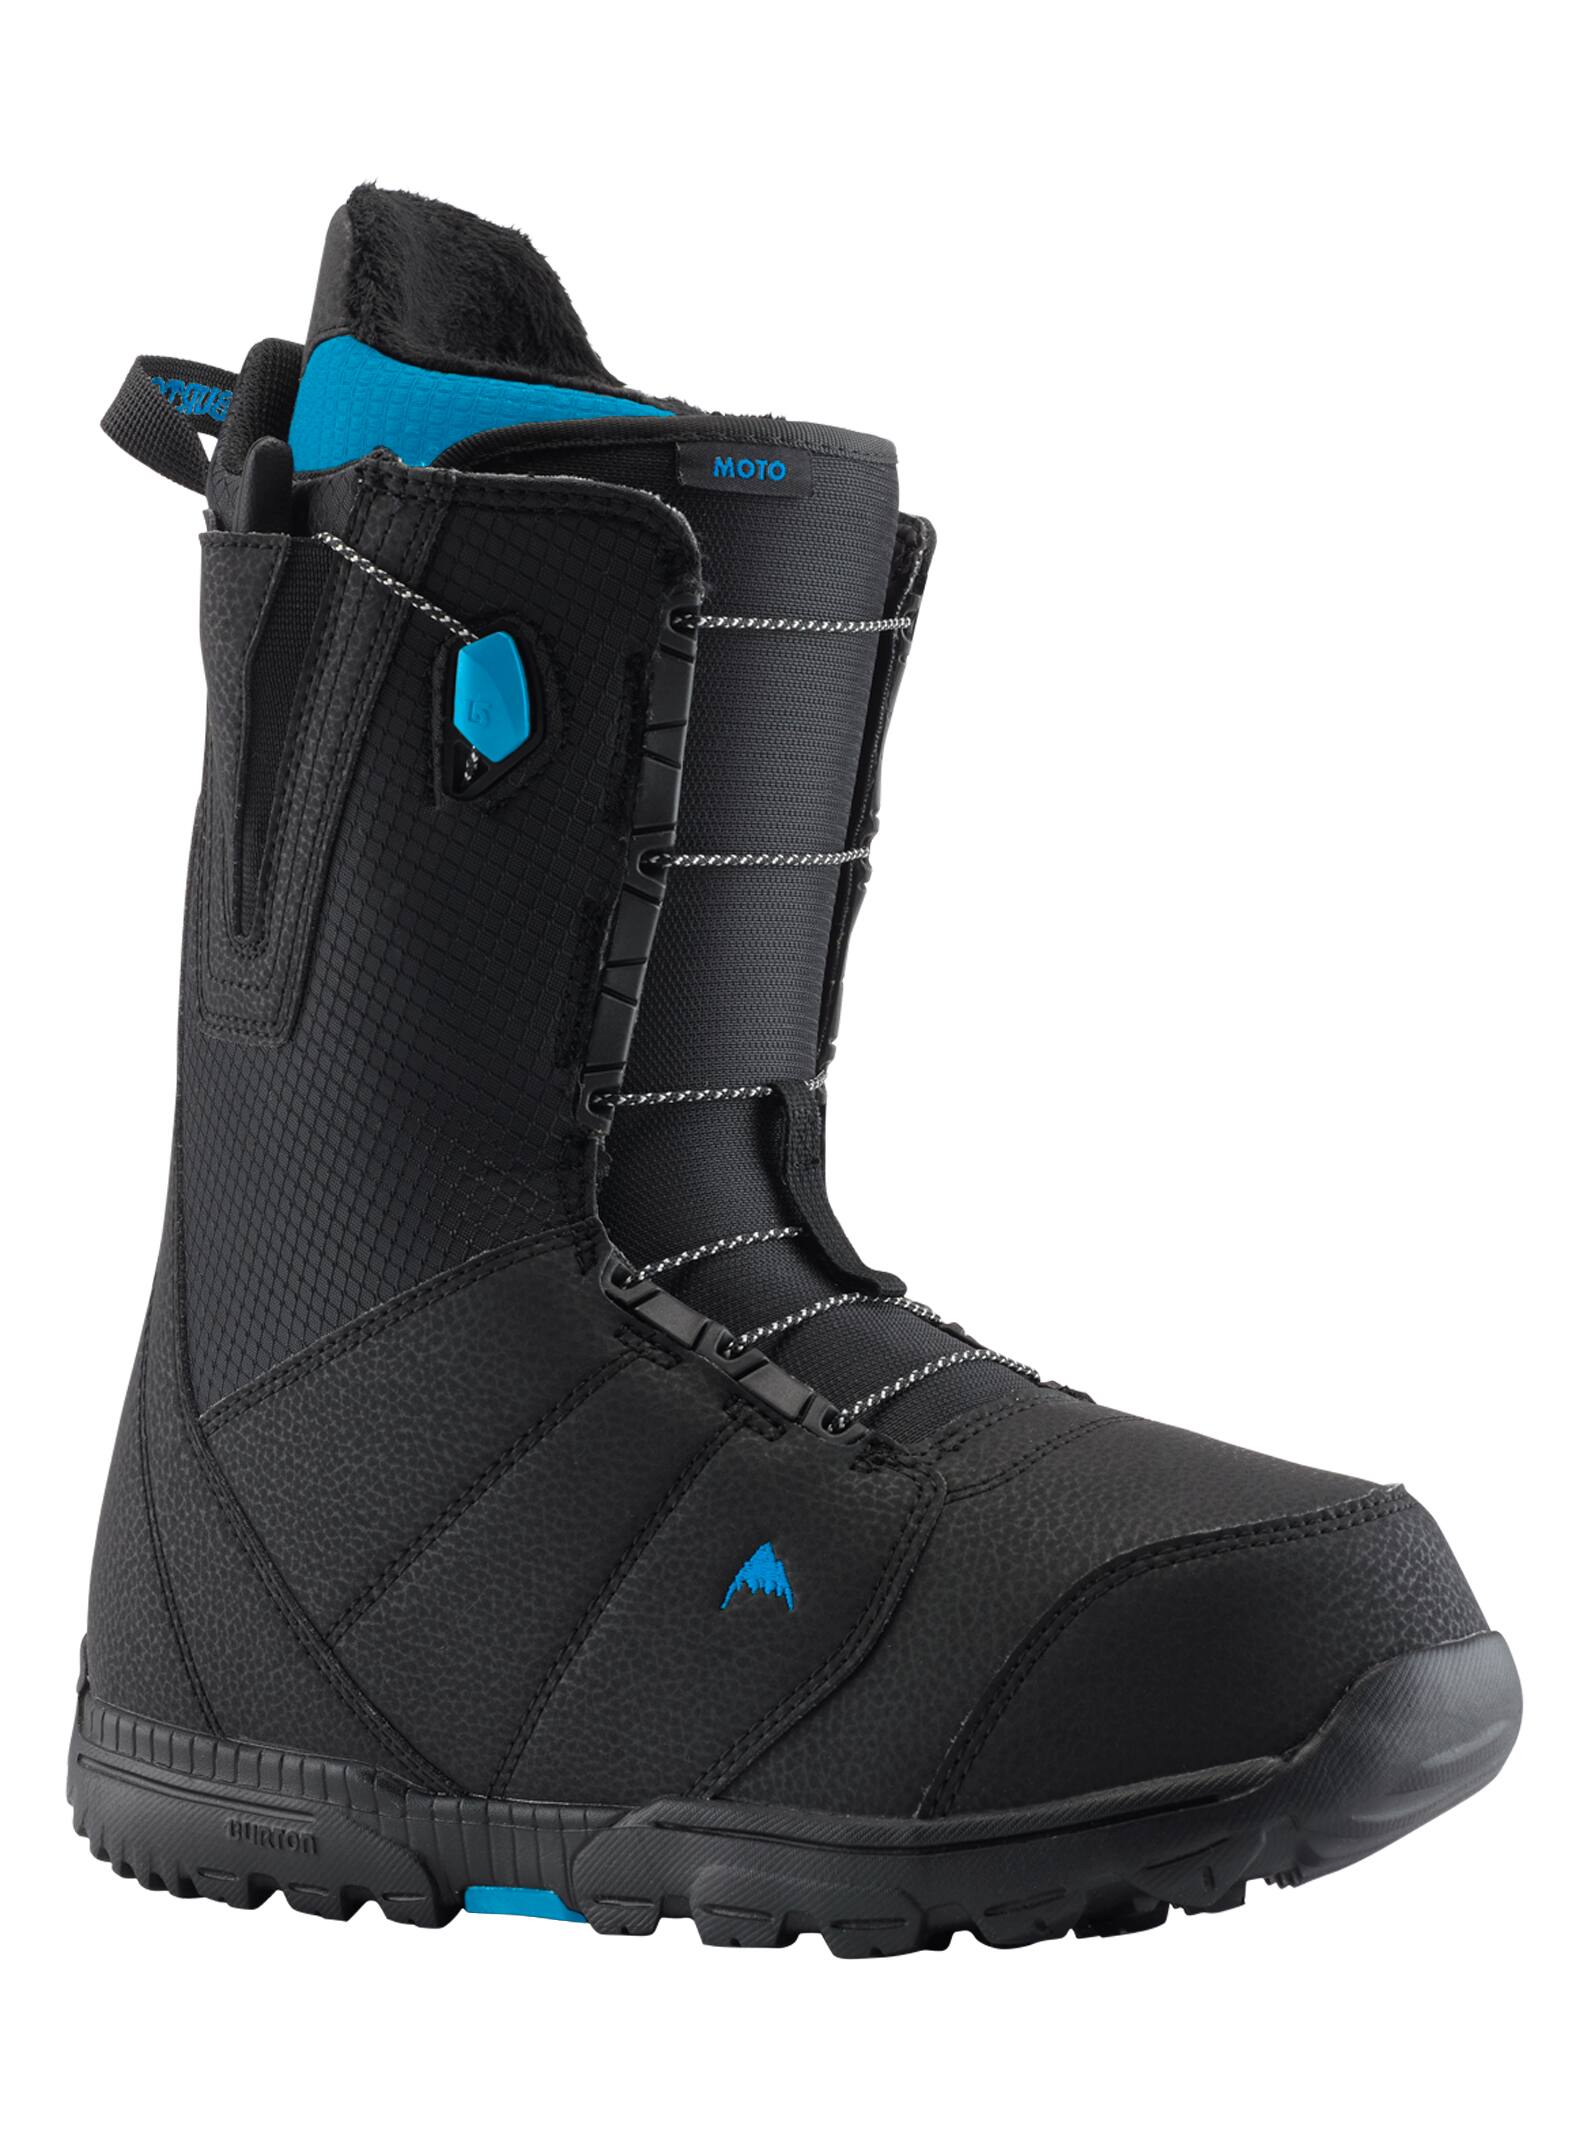 Burton - Boots de snowboard Moto homme, Black / Blue, 10